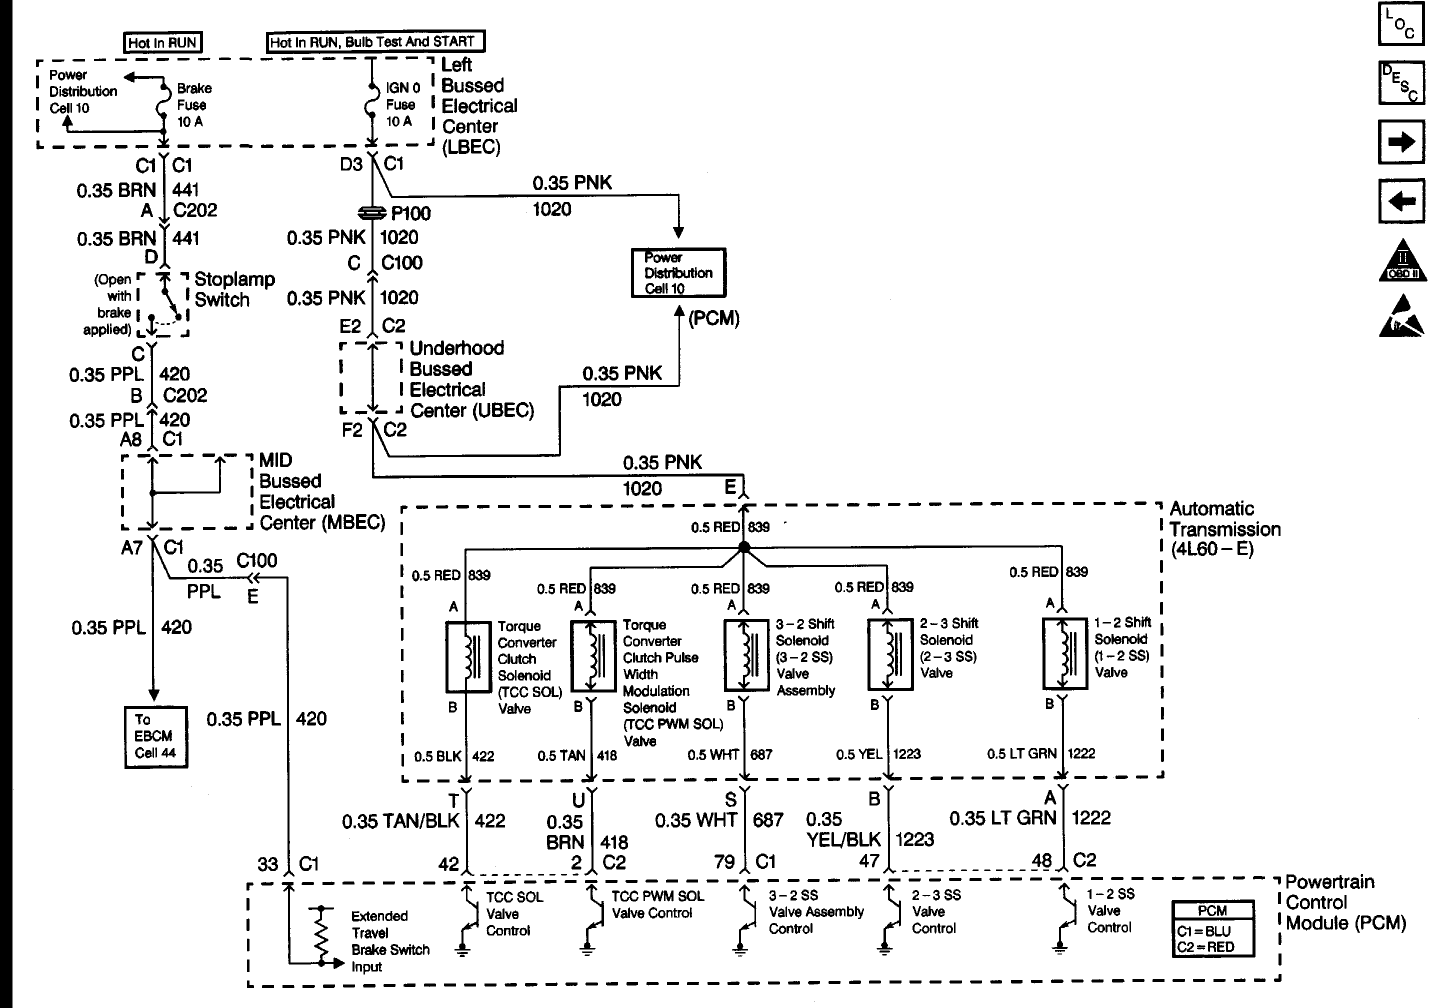 Wiring Schematic For 1999 Gmc Sierra, 2001 Gmc Sierra Wiring Schematic